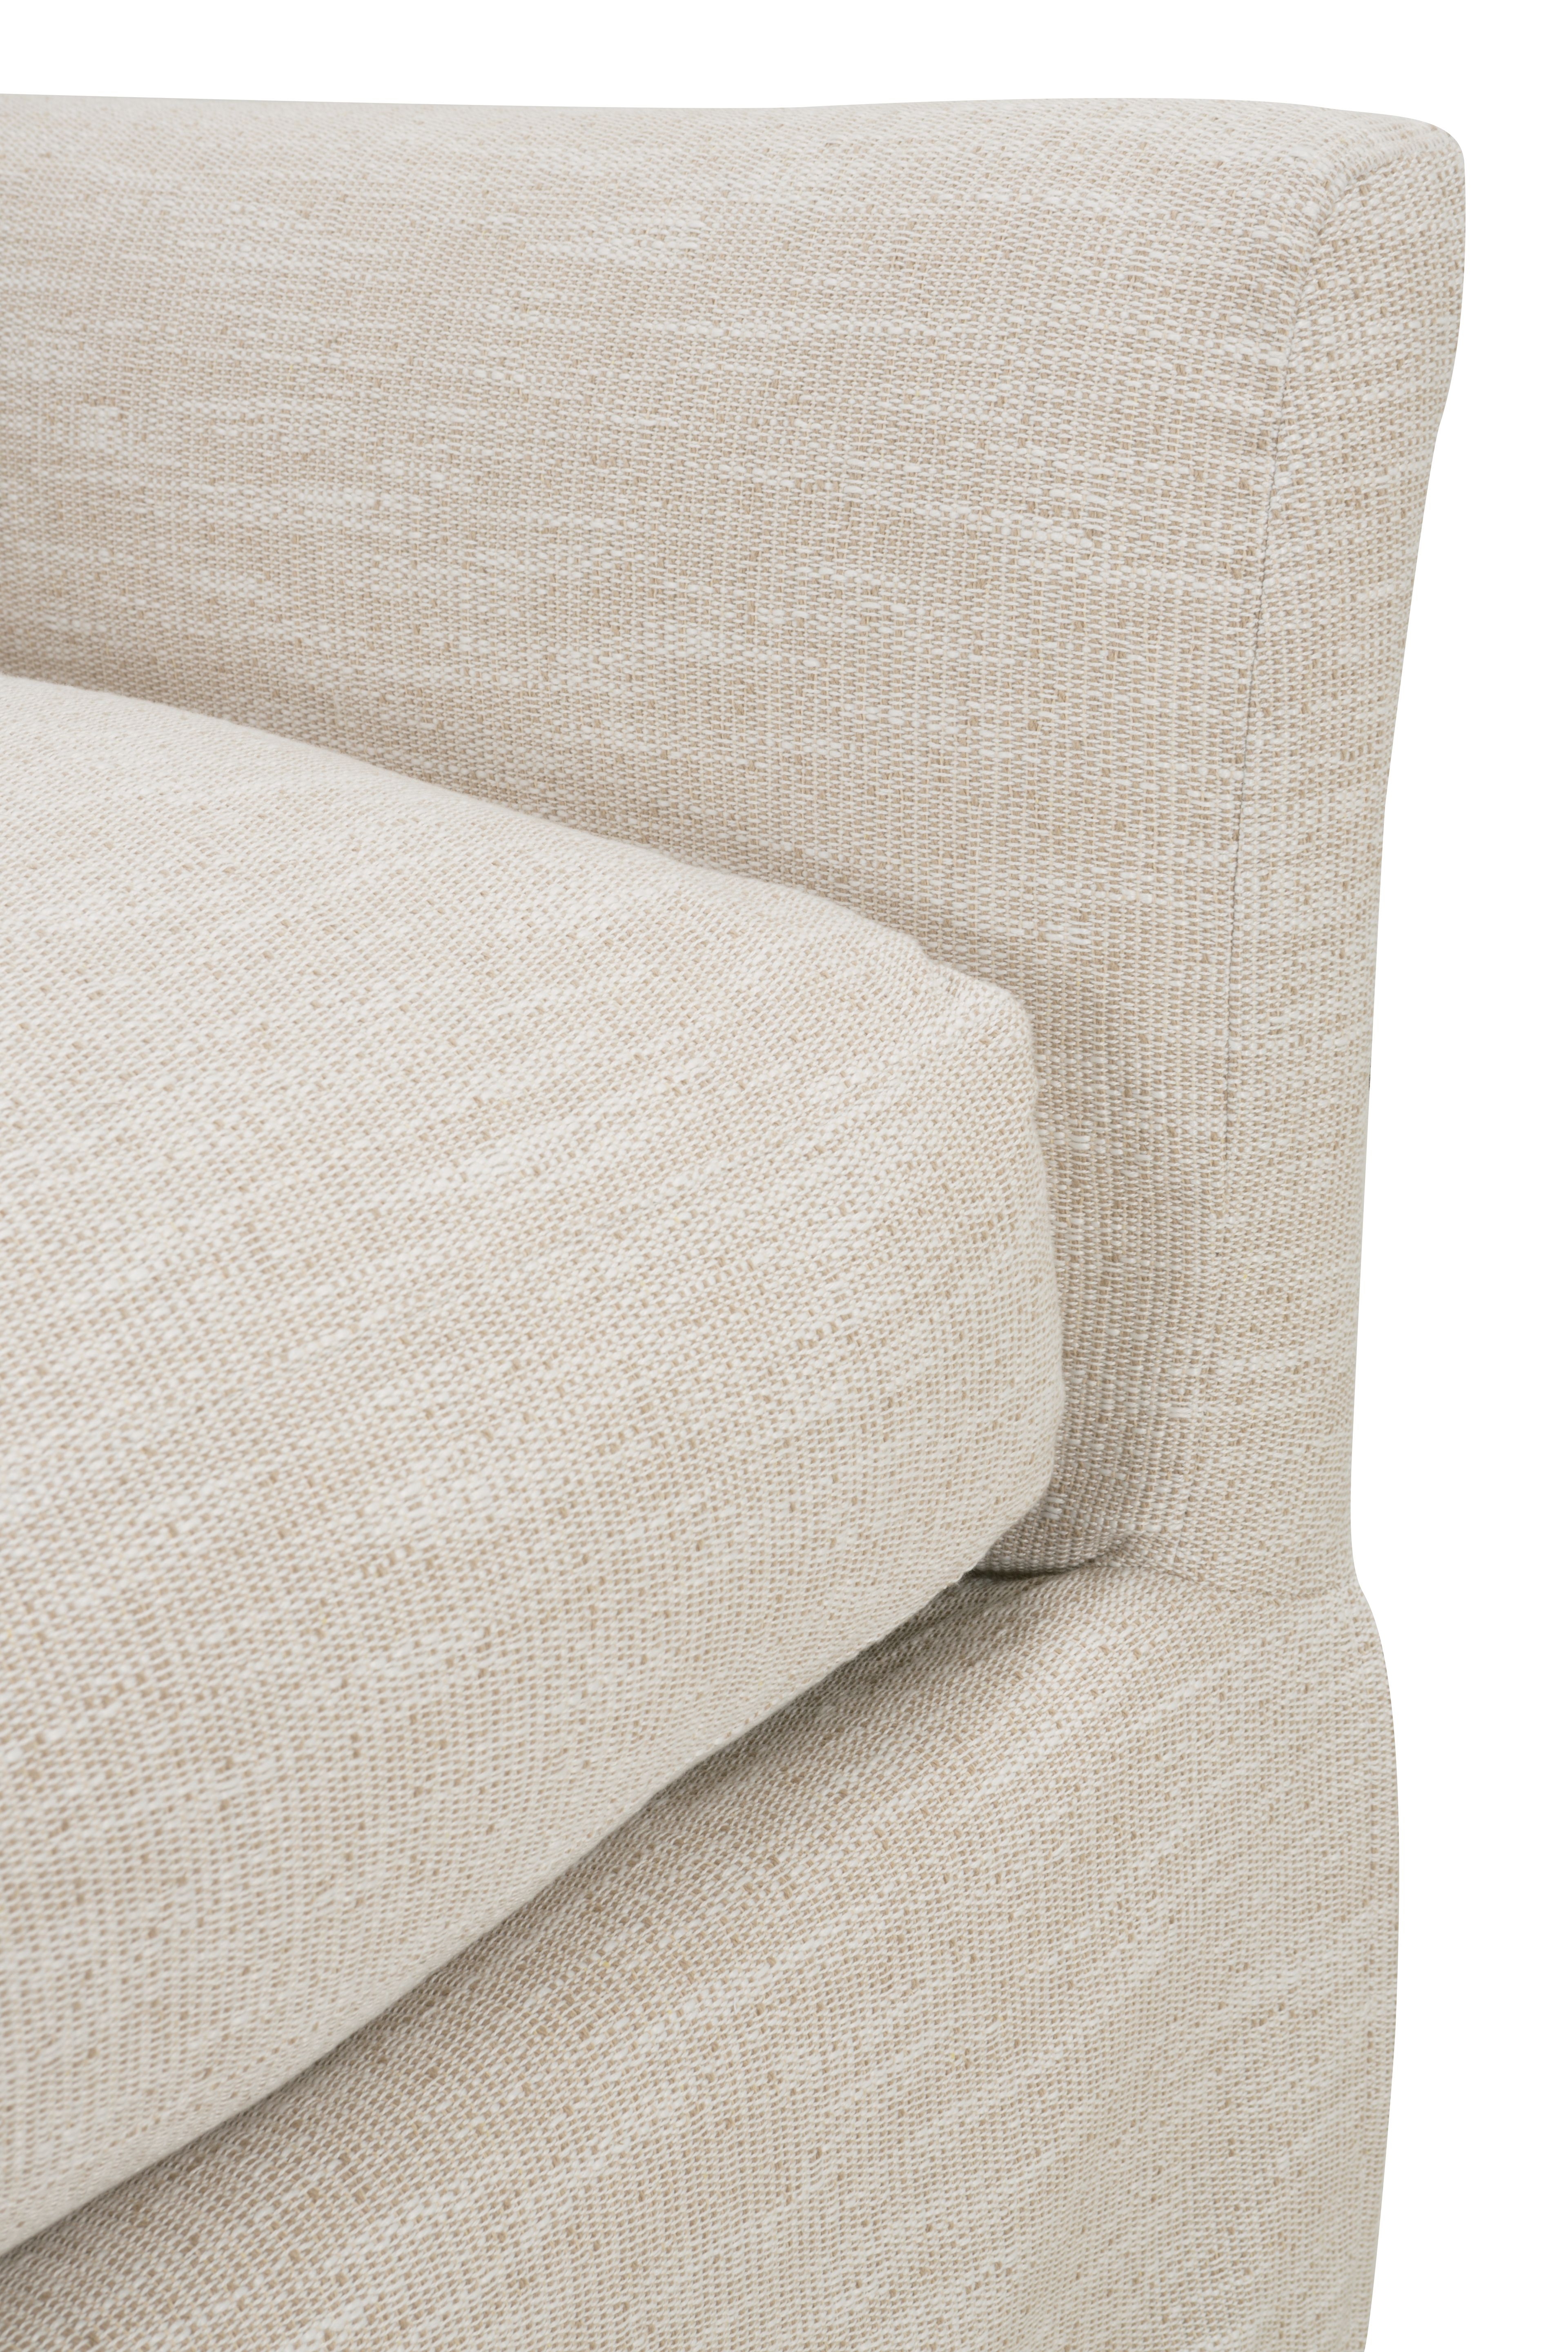 Fraser Slipcover Sofa, Bench Cushion, White, 95" - Image 12